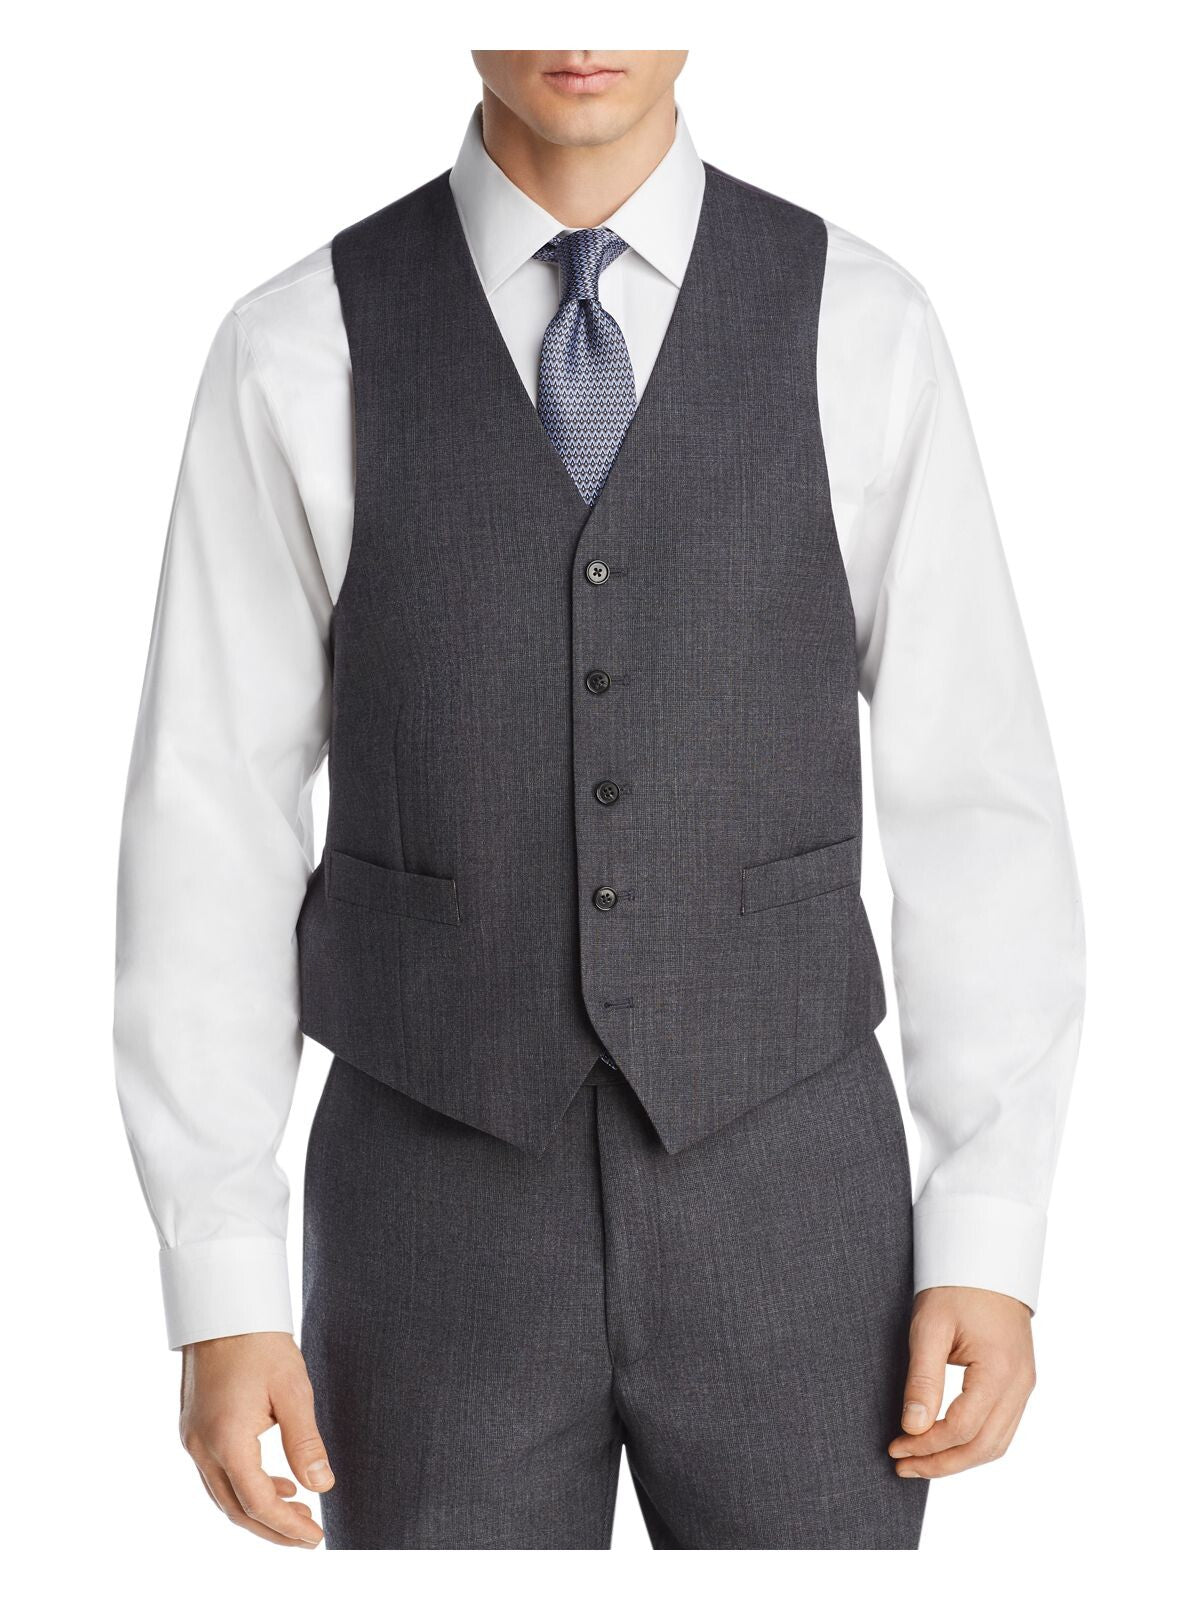 MICHAEL KORS Mens Gray Classic Fit Suit Separate Vest Jacket 44R